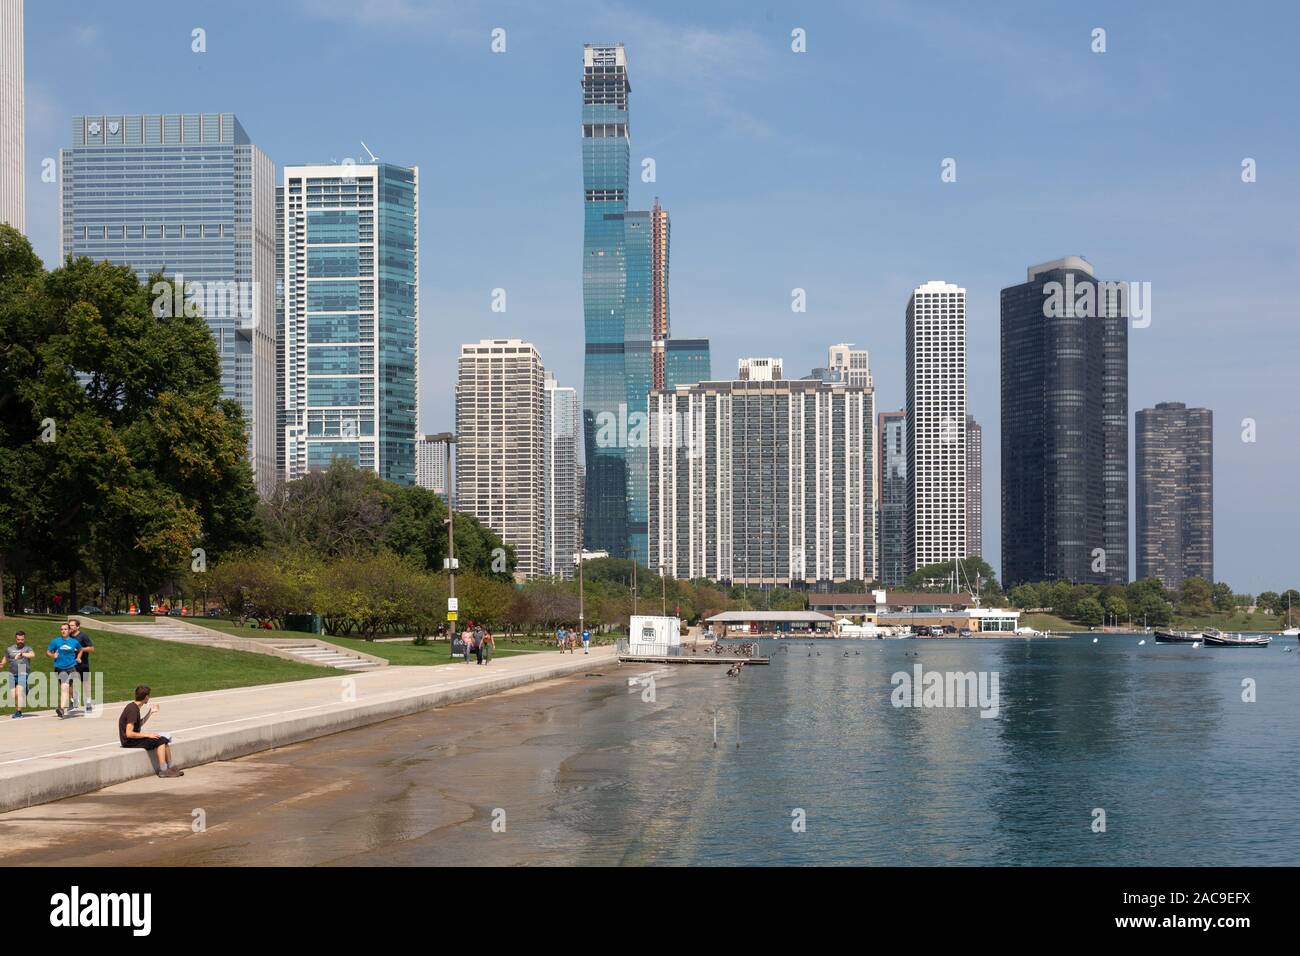 Lakefront, Chicago, Illinois, USA Stock Photo